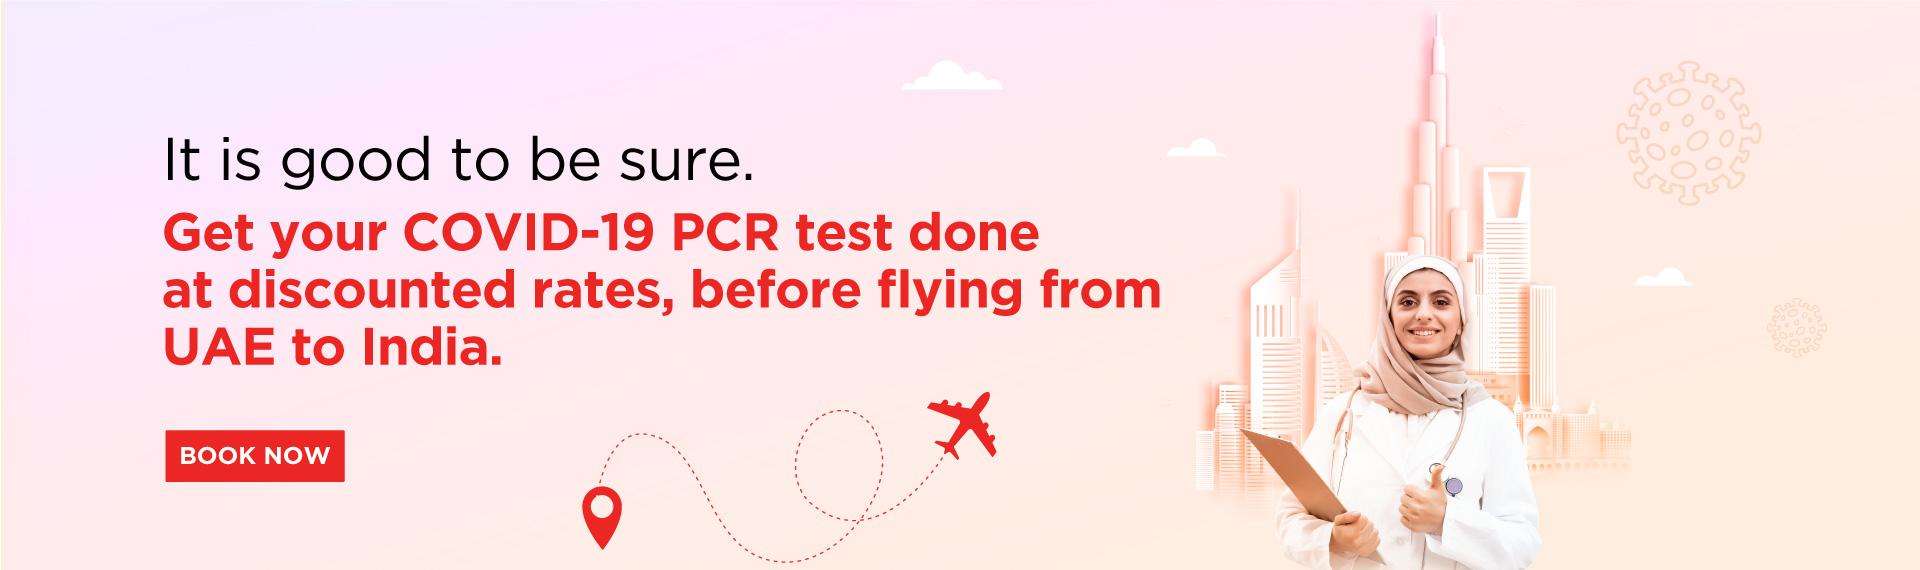 स्पाइसजेट ने एयरलाइन पैक्स के लिए 299 रुपये में भारत के सबसे सस्ते आरटी-पीसीआर टेस्ट की घोषणा की; यह टेस्ट पब्लिक के लिए 499 रूपए में है